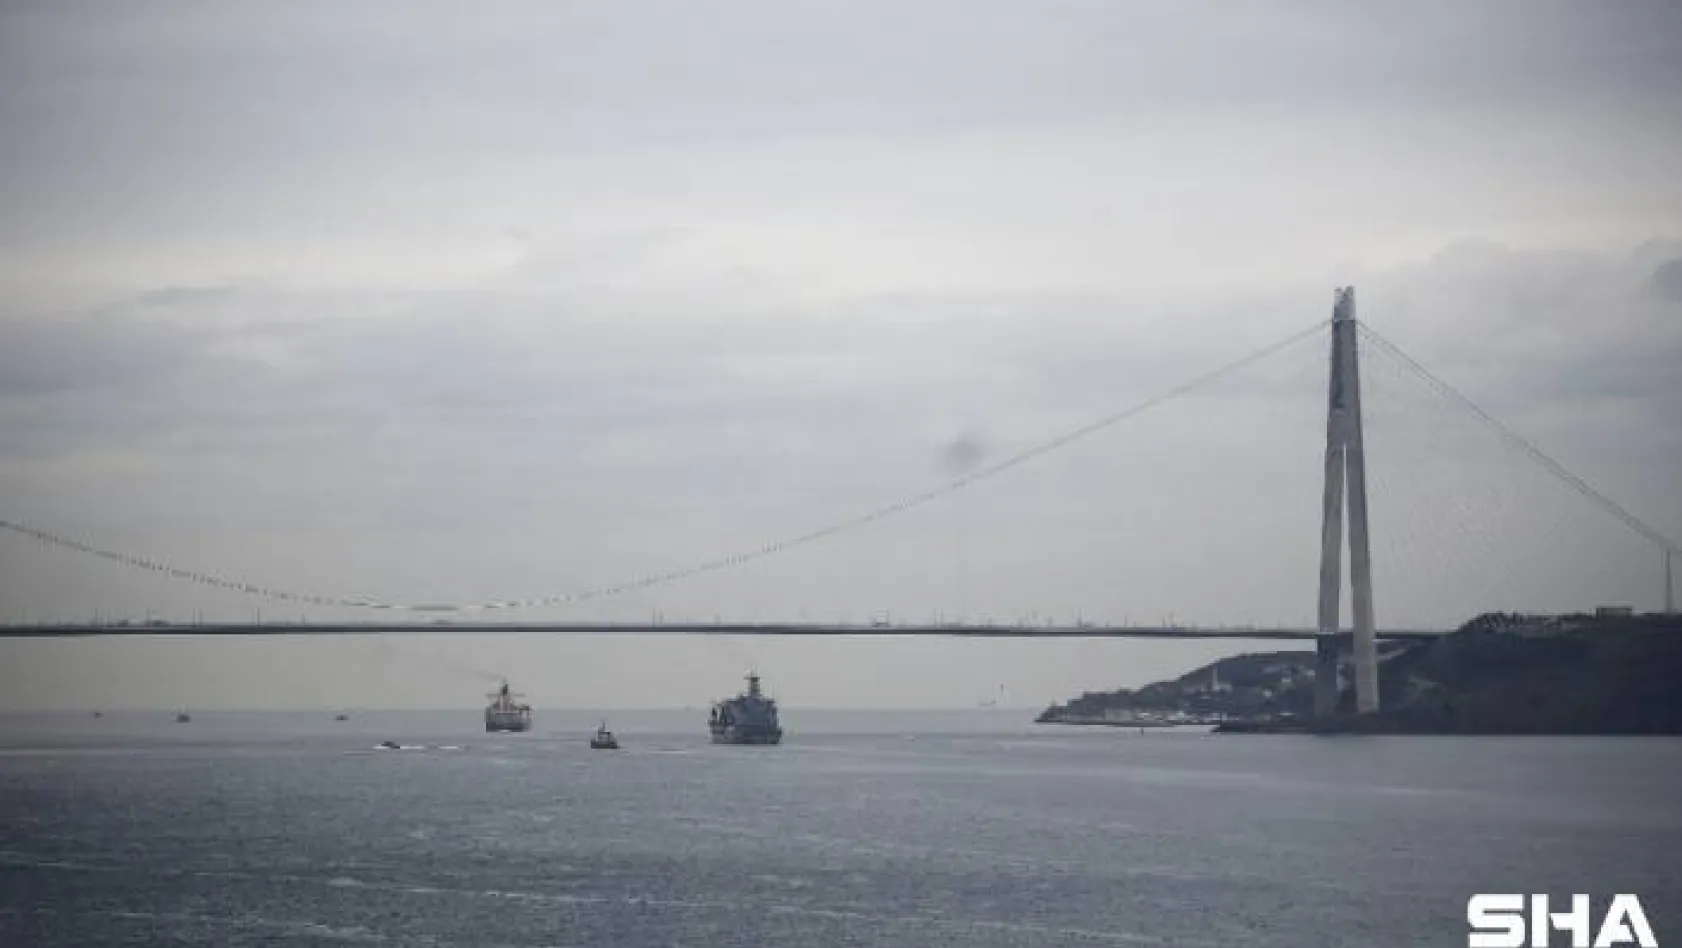 ADB savaş gemisi İstanbul Boğazı'ndan geçti